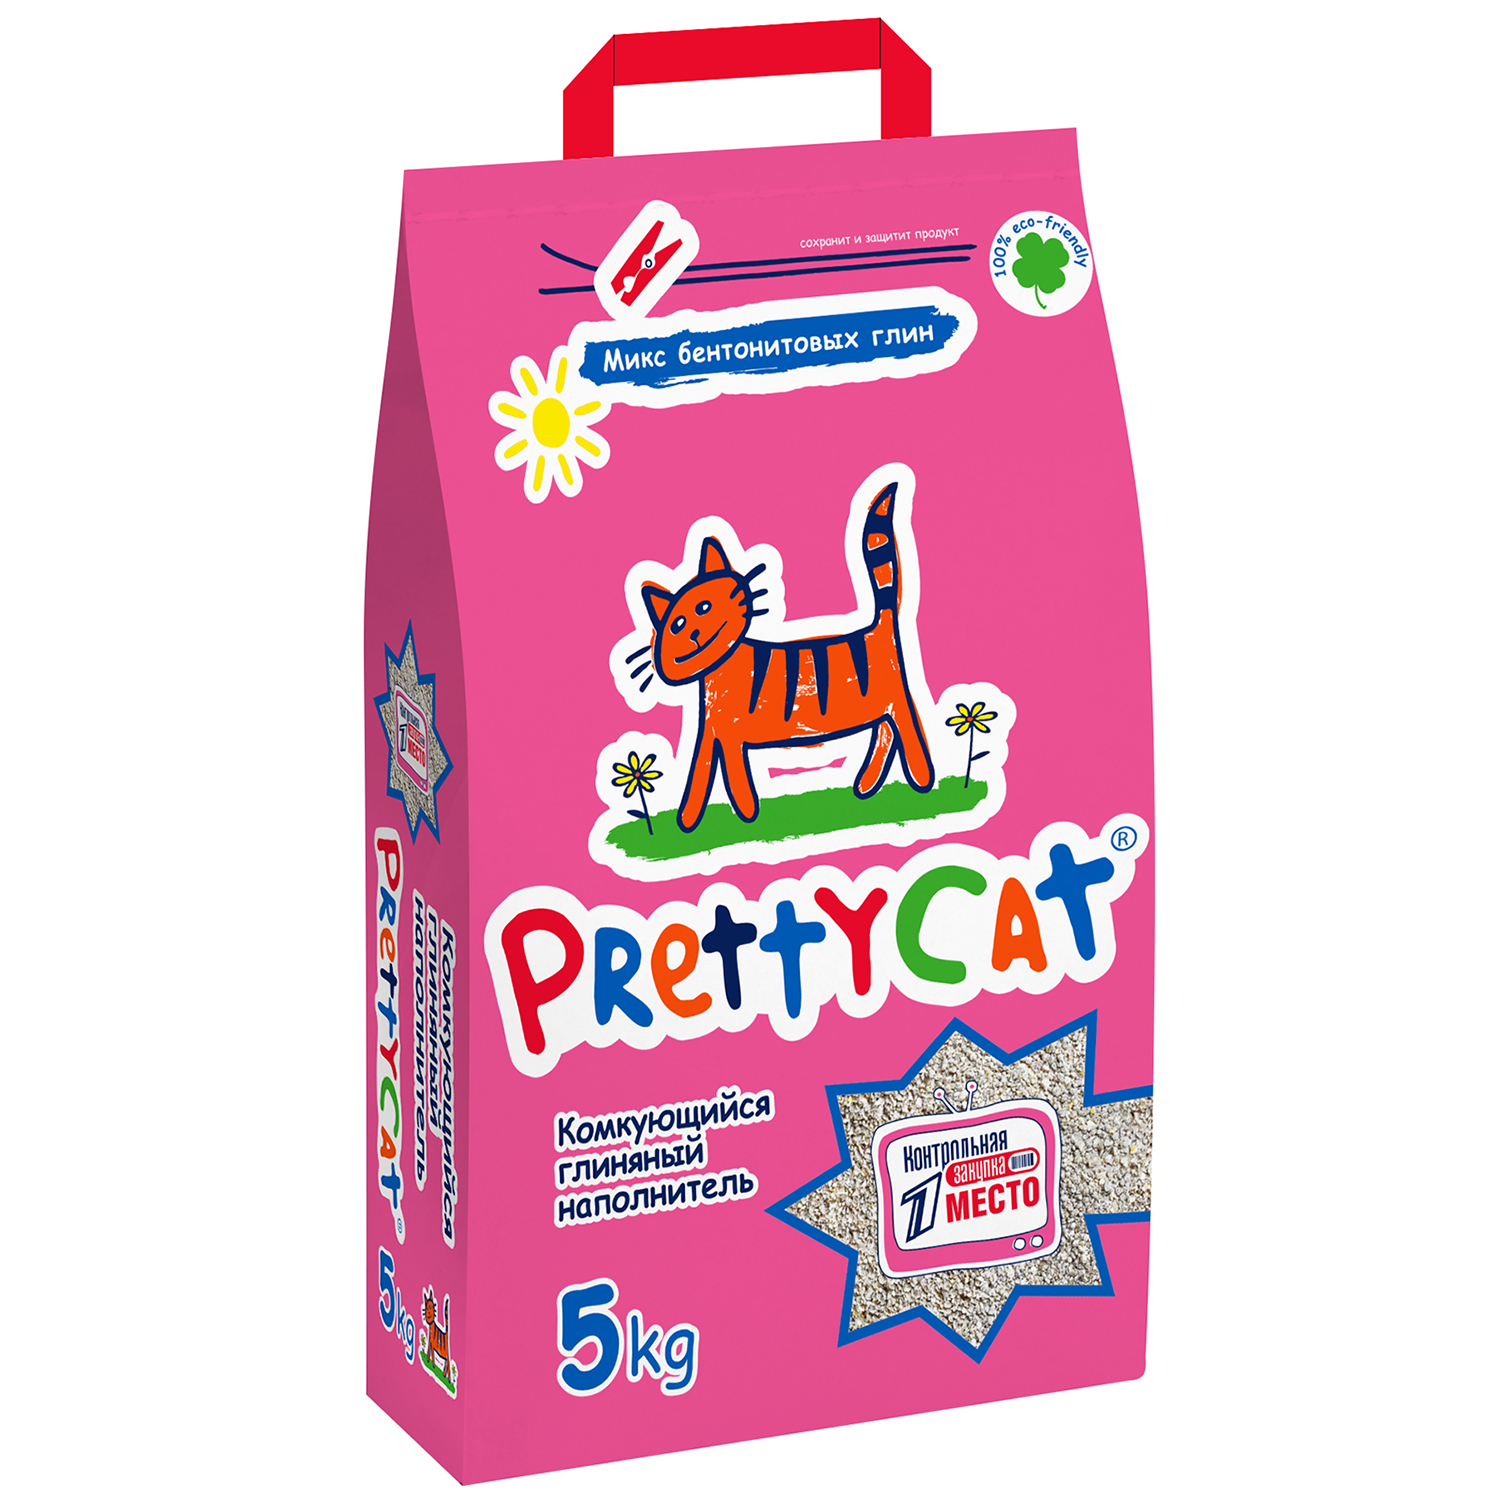 PrettyCat наполнитель комкующийся для кошачьих туалетов 